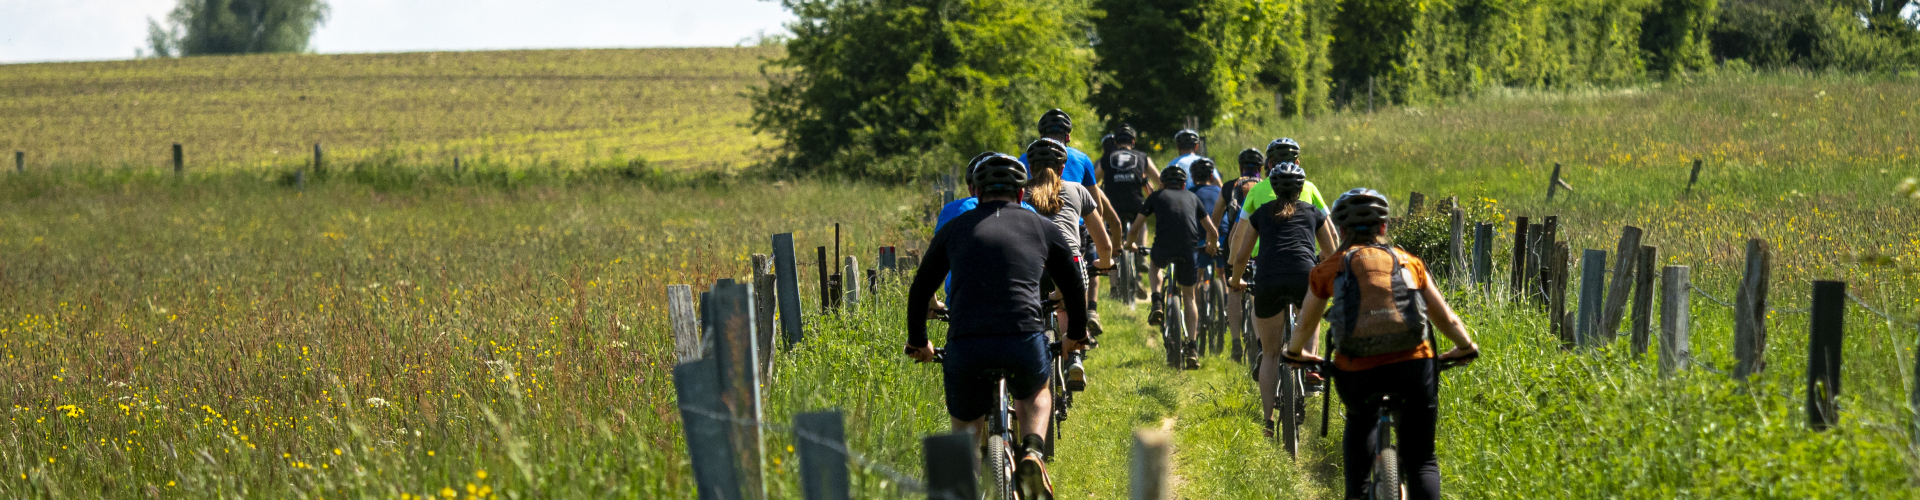 fietsen heuvels samen groep avontuurlijk spannend adrenaline